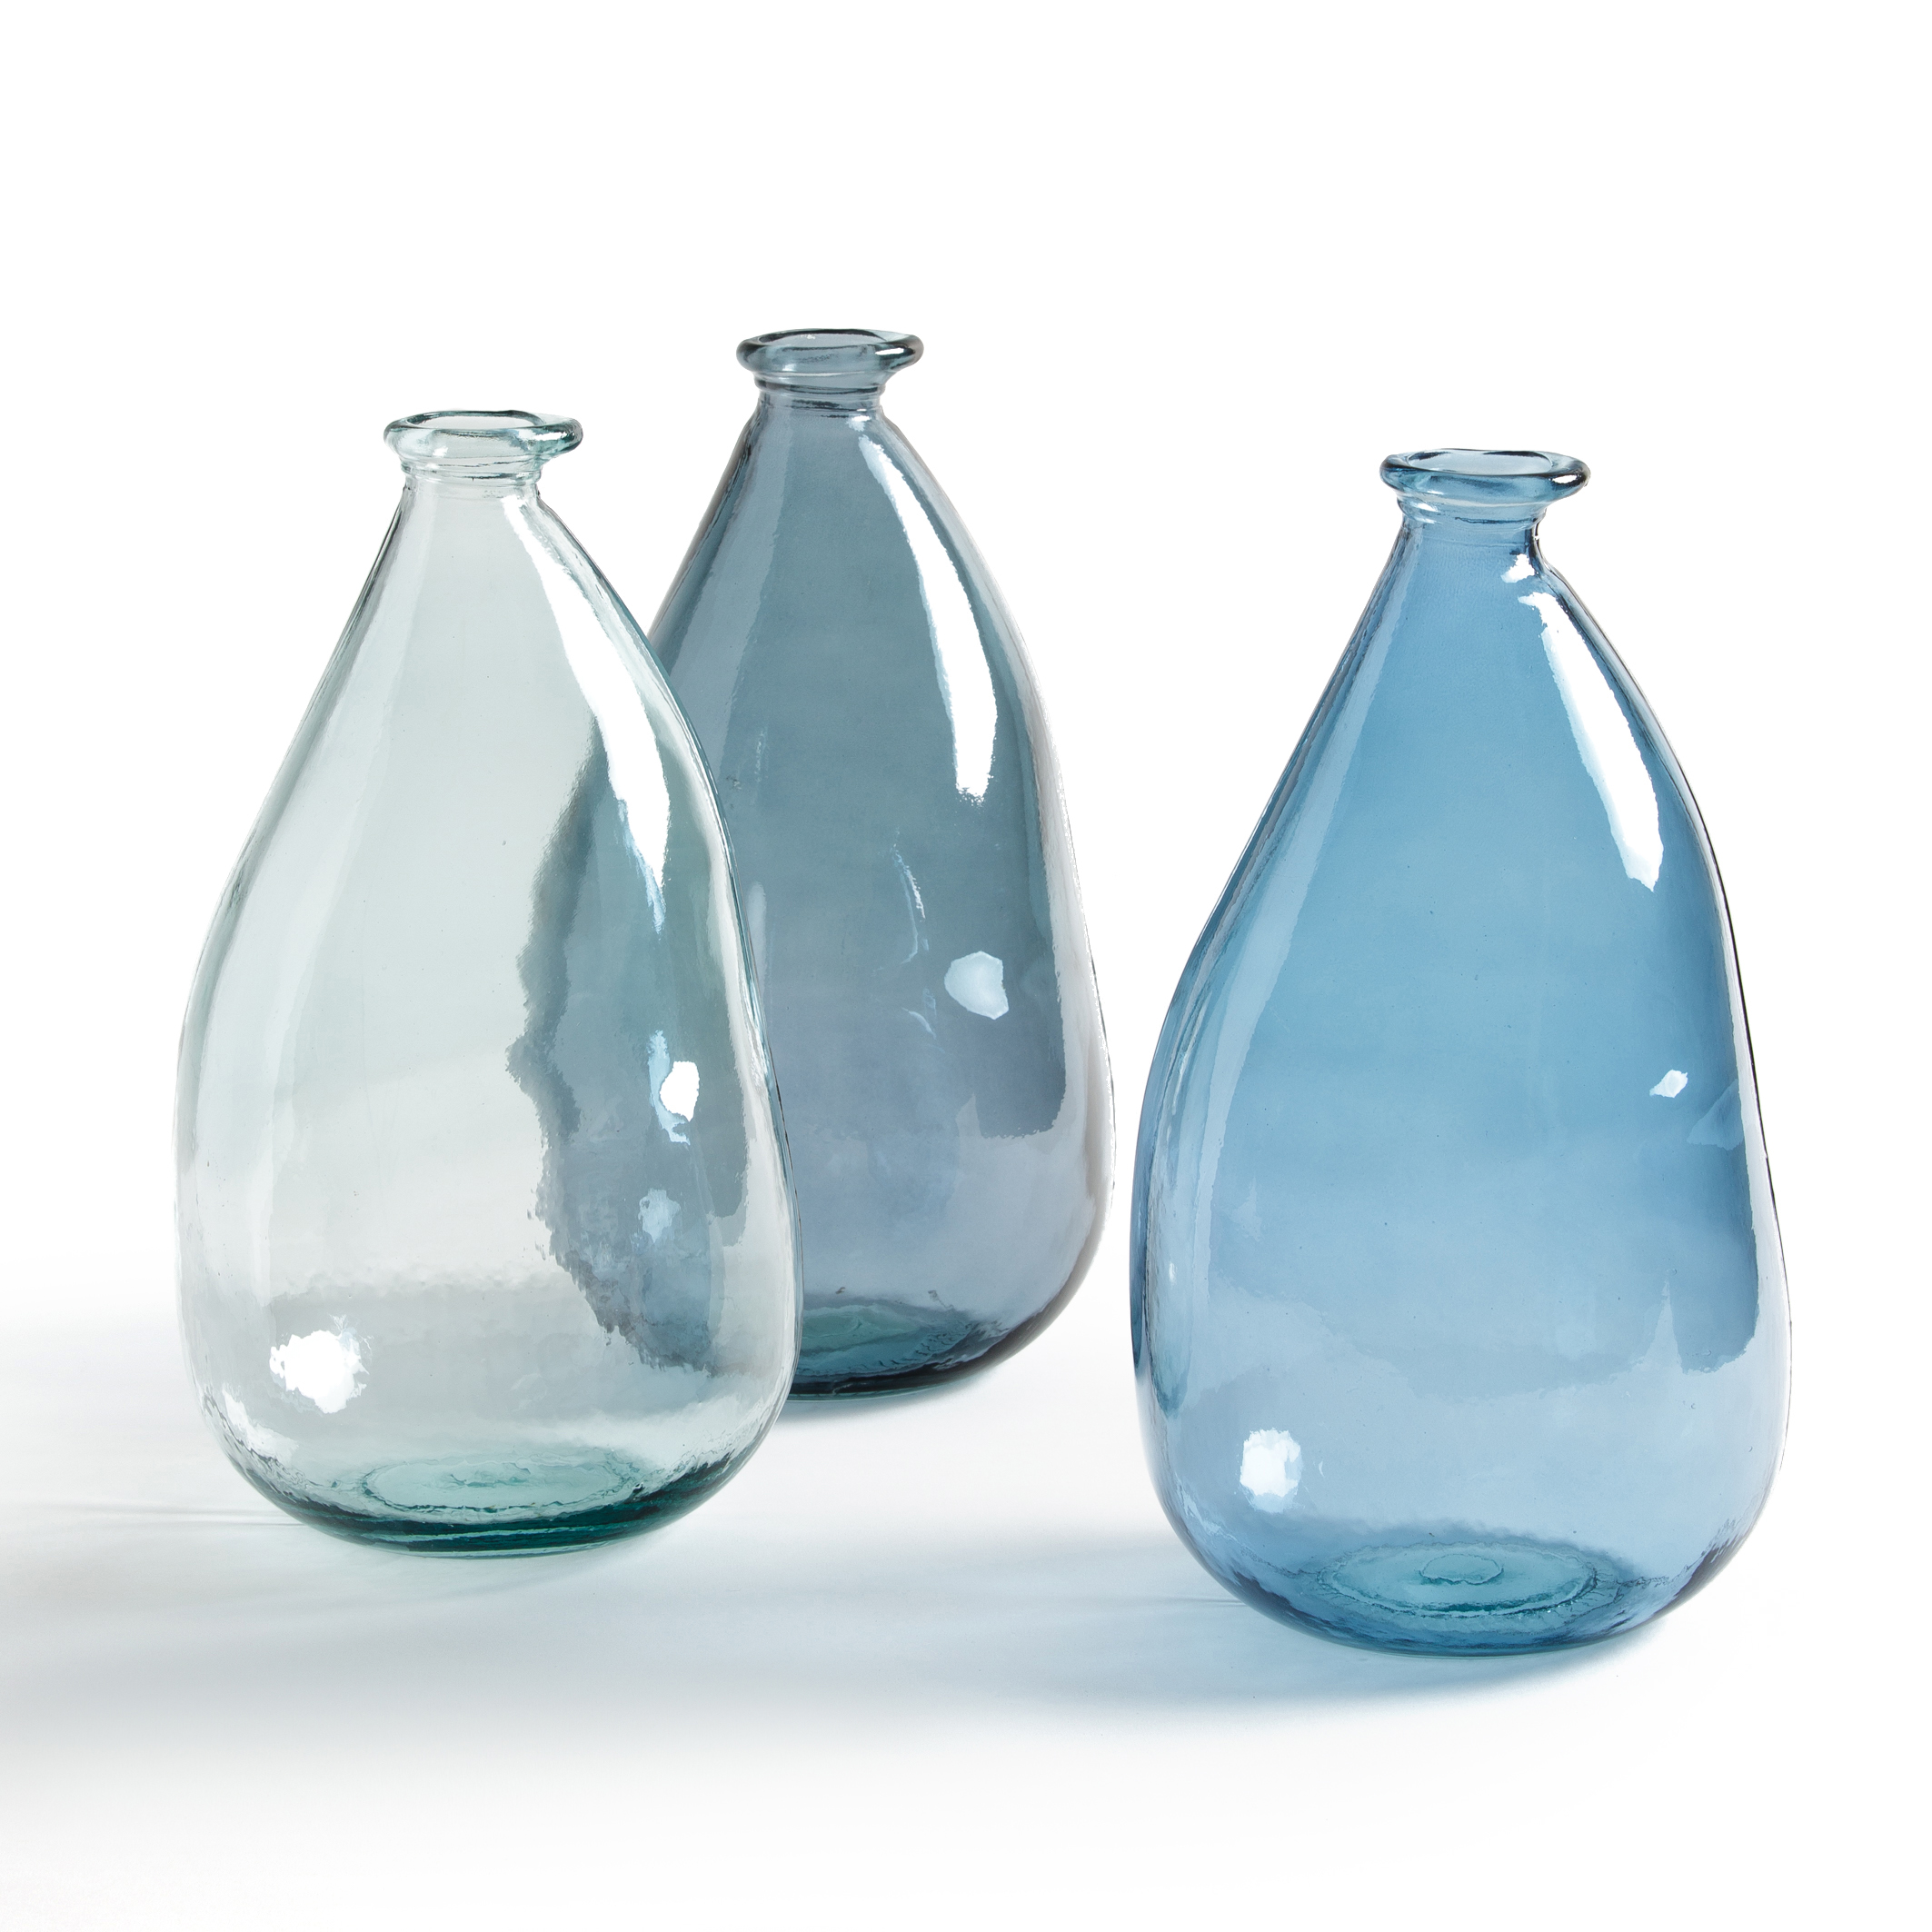 Стеклянный сосуд сложной формы. Стеклянные вазы. Стеклянные вазы и бутылки. Ваза бутыль стеклянная. Ваза бутылка стеклянная.